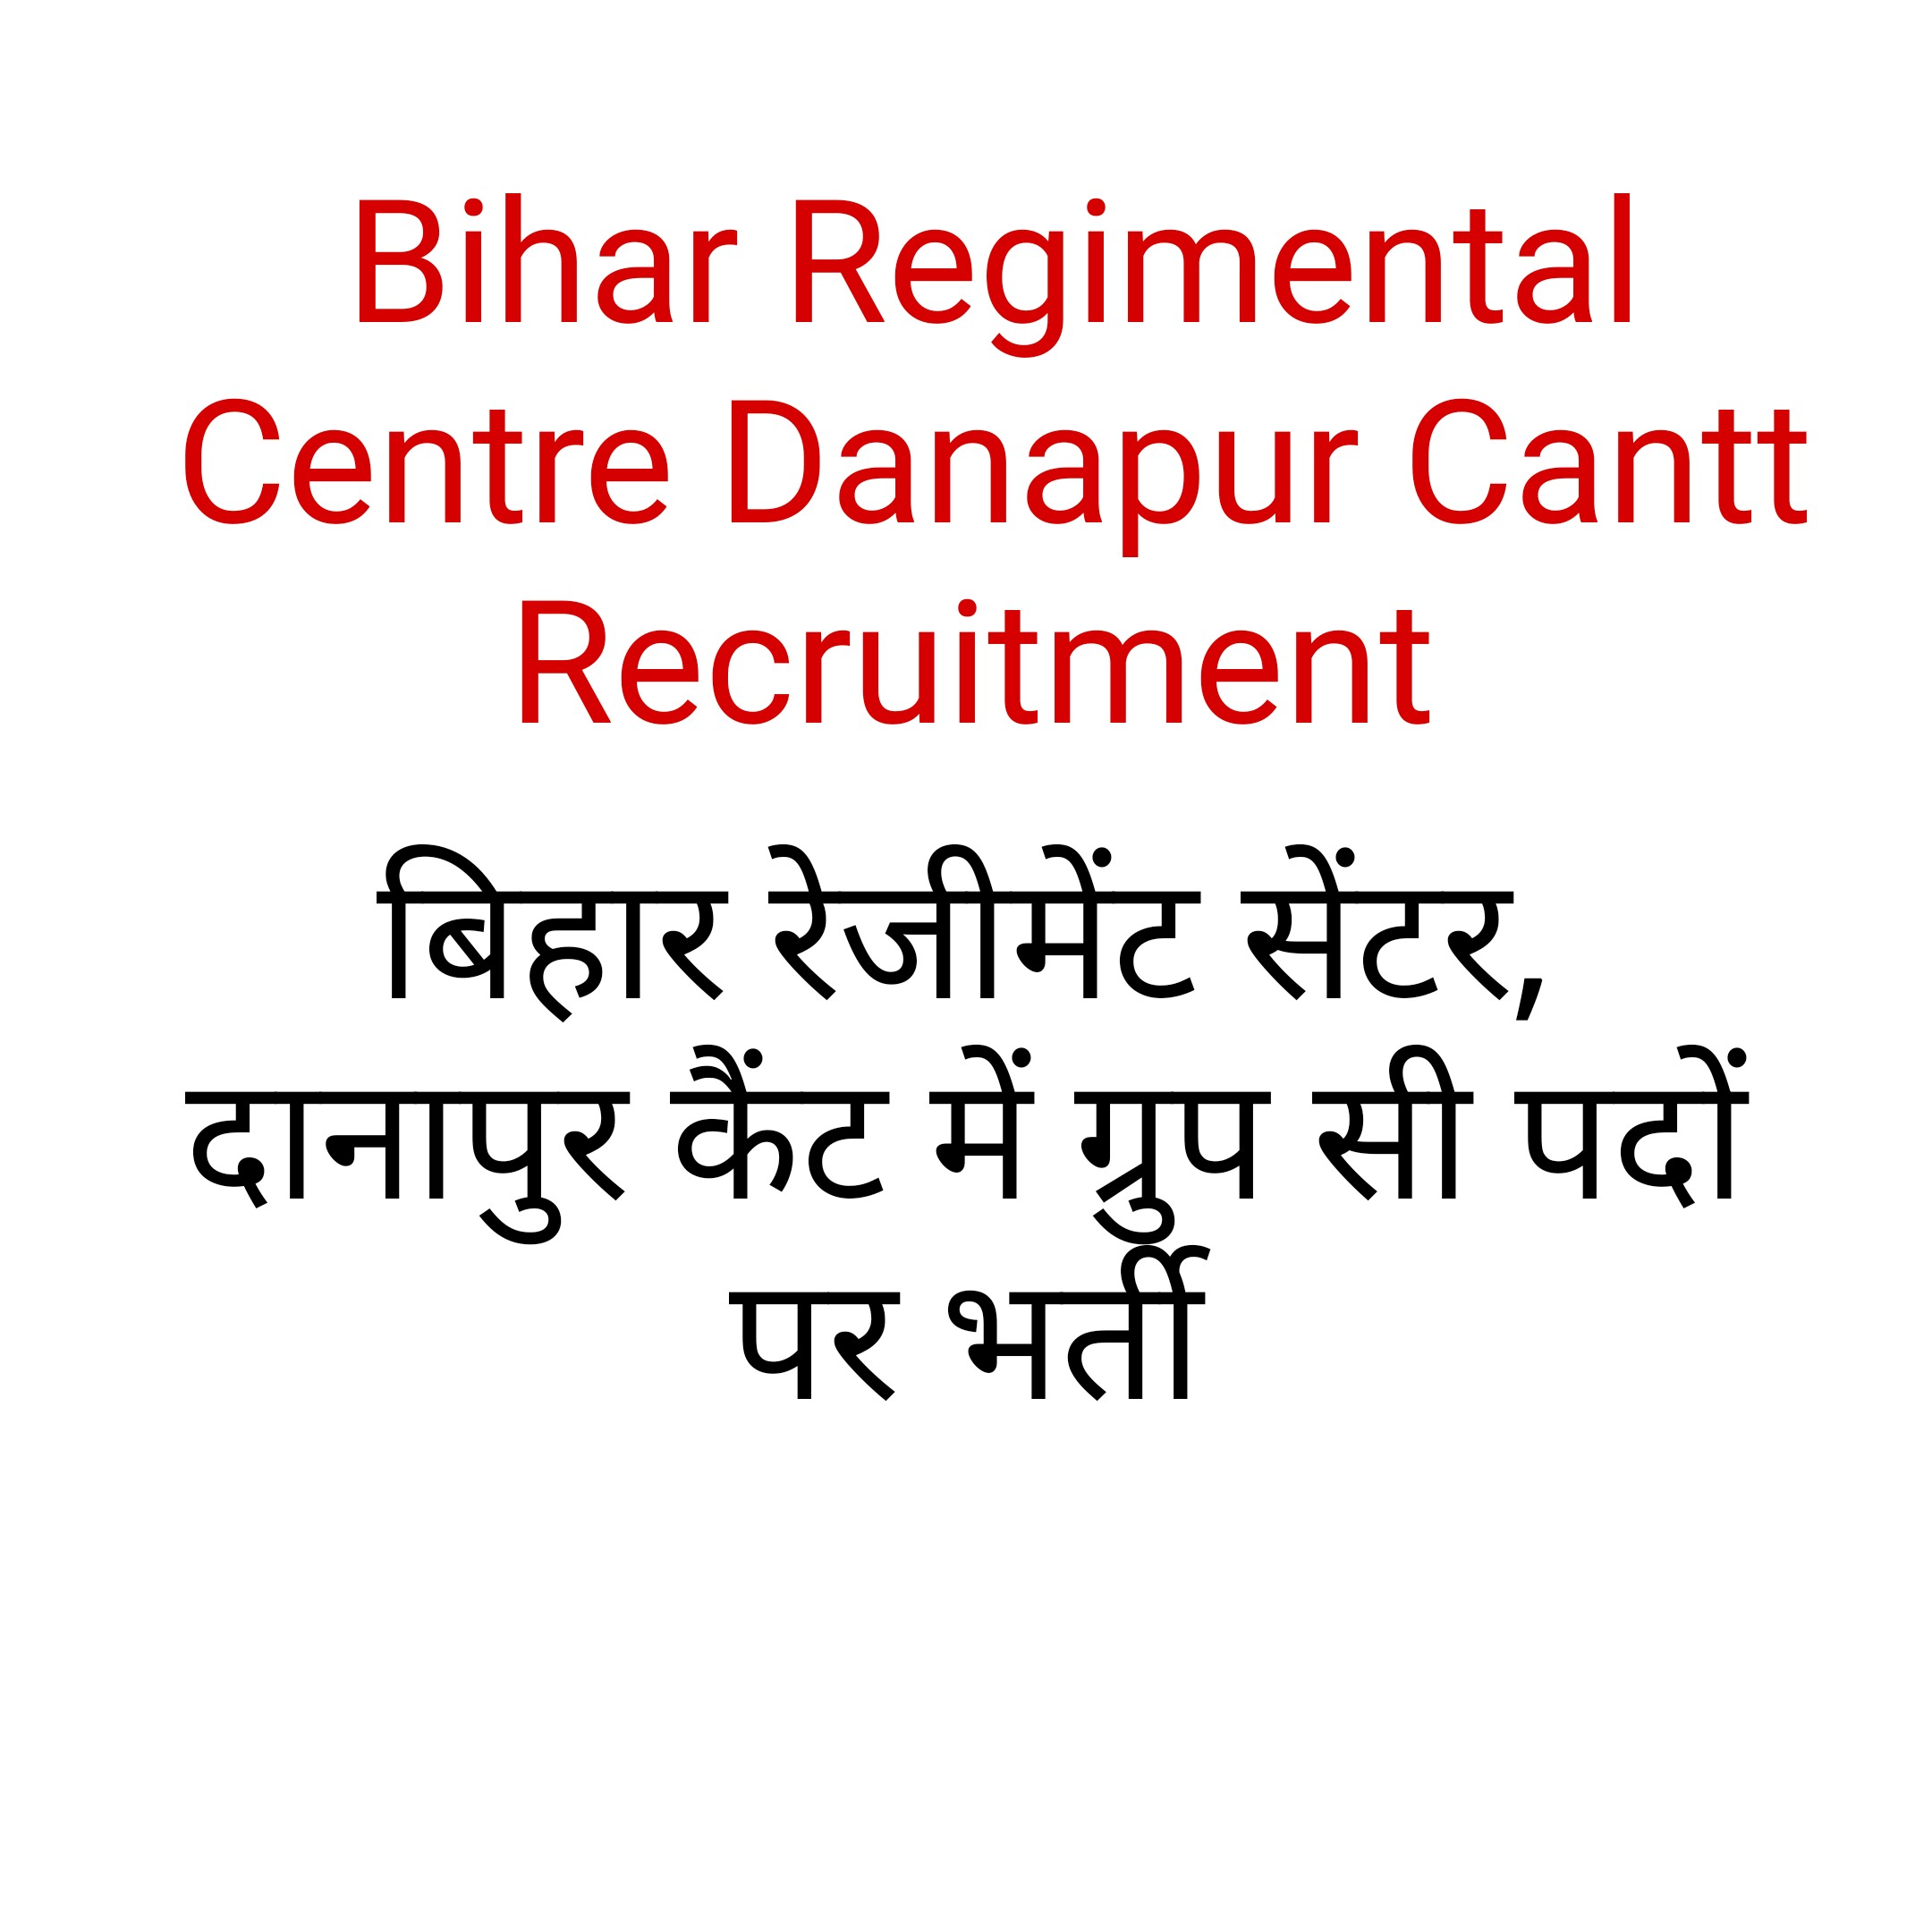 Bihar Regimental Centre Danapur Cantt Recruitment || बिहार रेजीमेंट सेंटर, दानापुर कैंट में ग्रुप सी पदों पर भर्ती